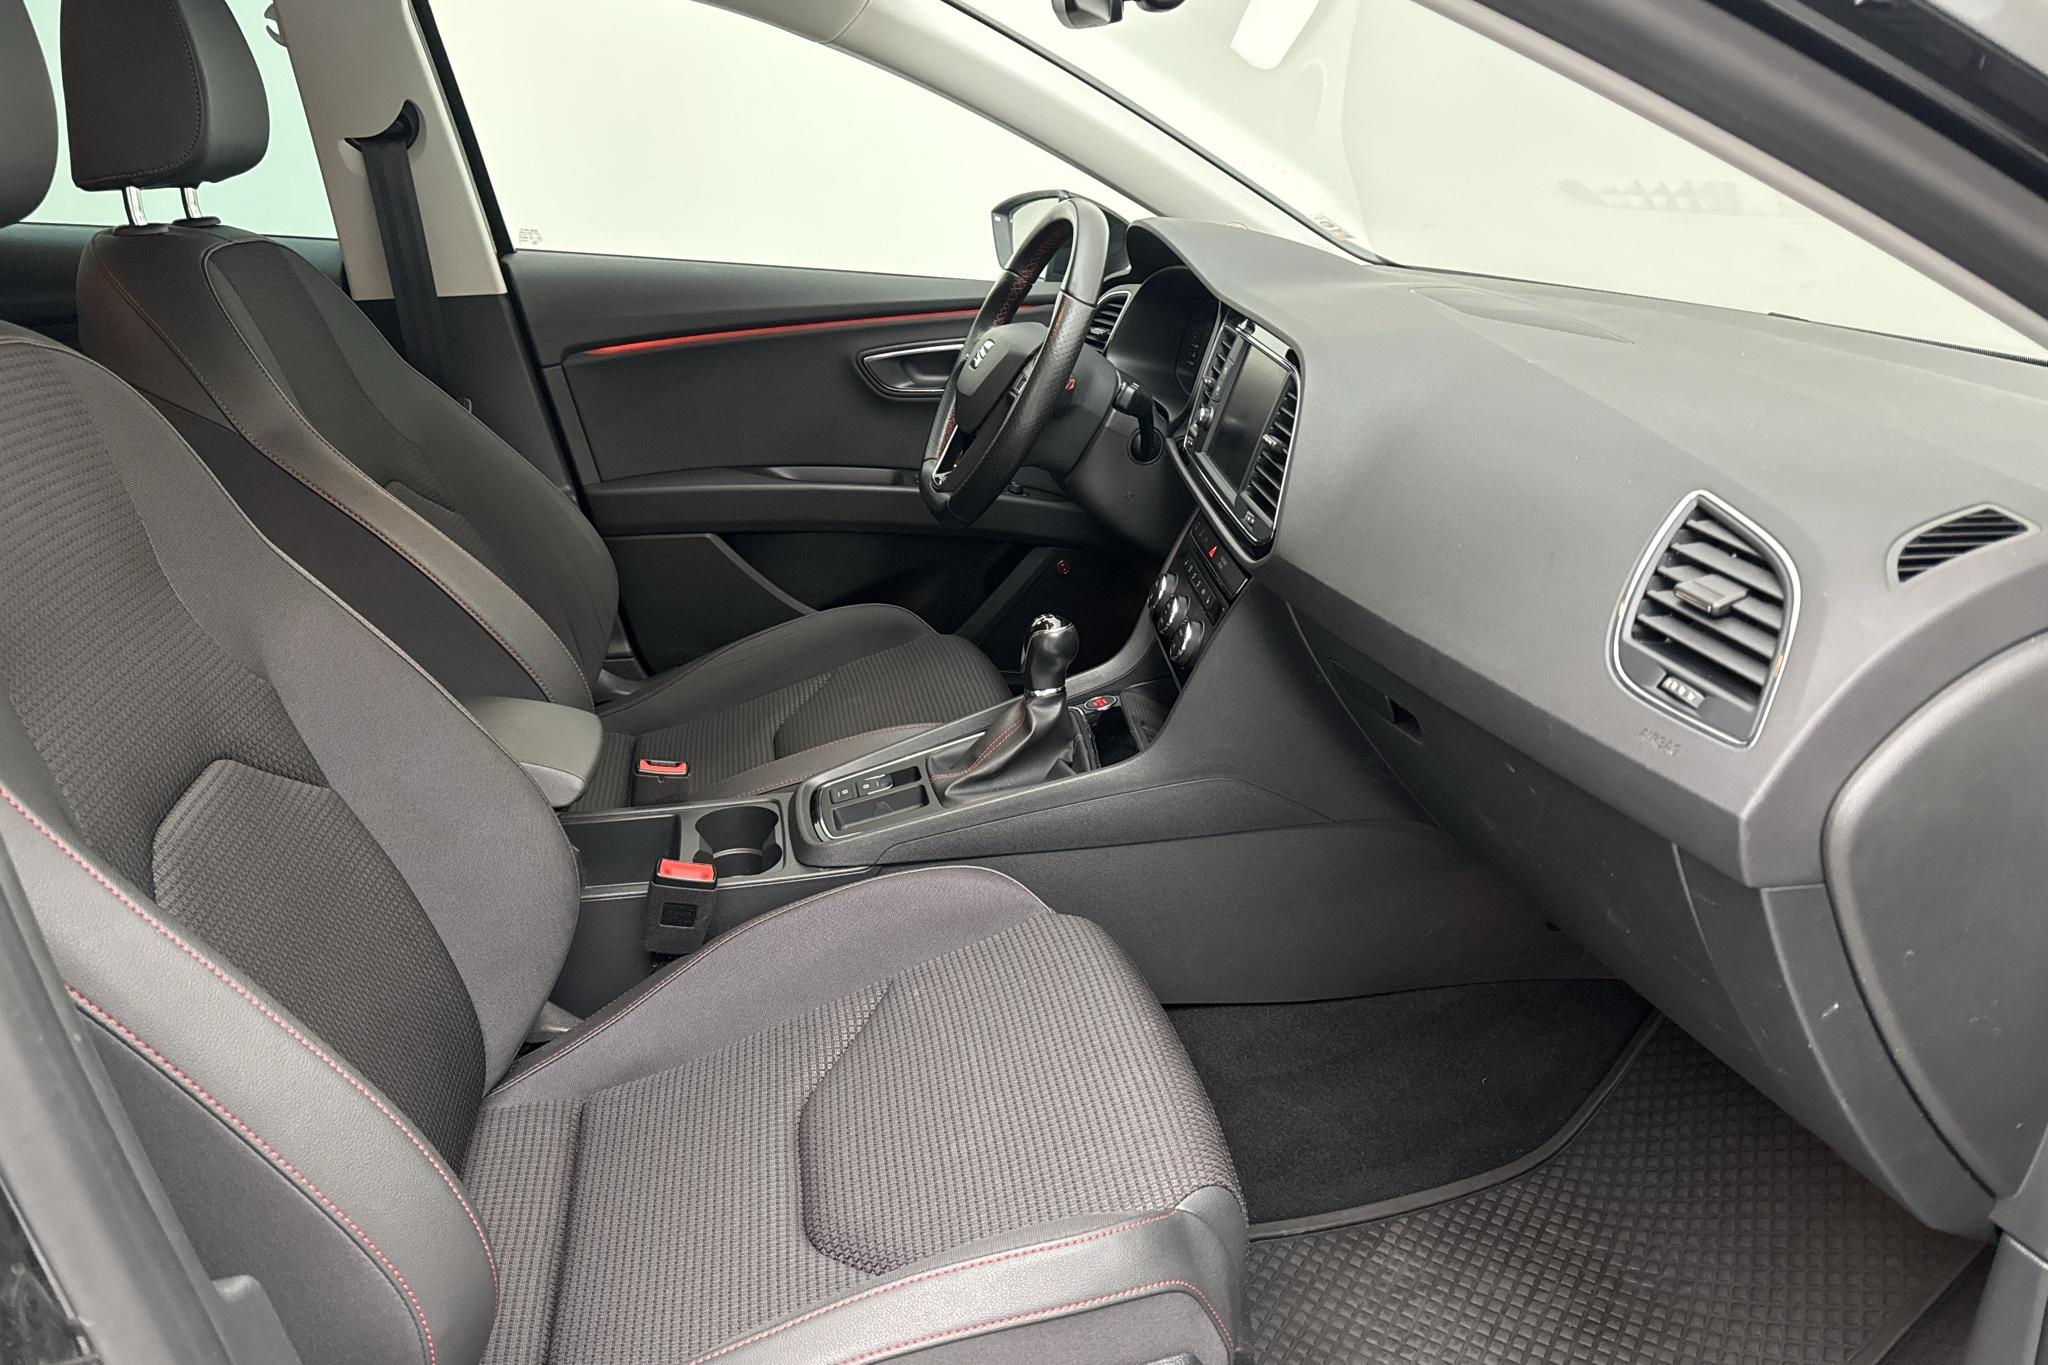 Seat Leon 1.5 TSI 5dr (130hk) - 49 770 km - Manual - black - 2019